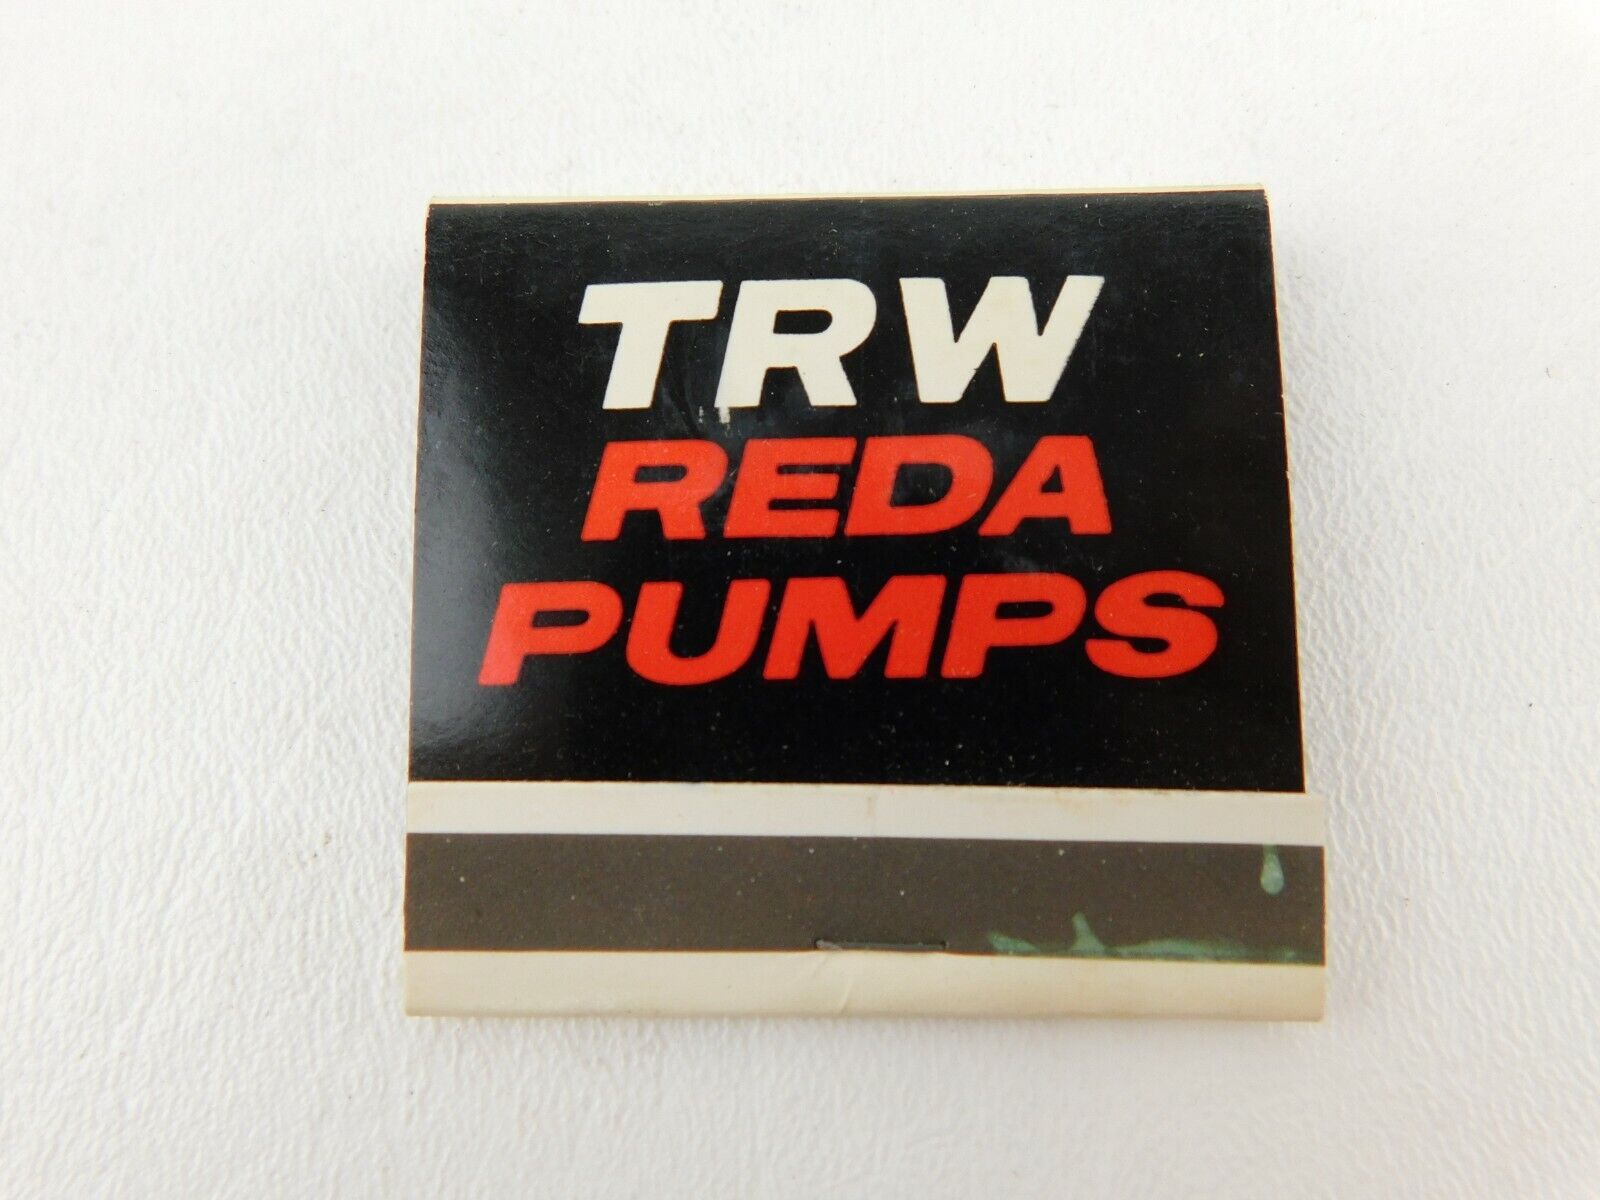 TRW REDA Pumps High Production Front Strike Full Unstruck Vintage Matchbook